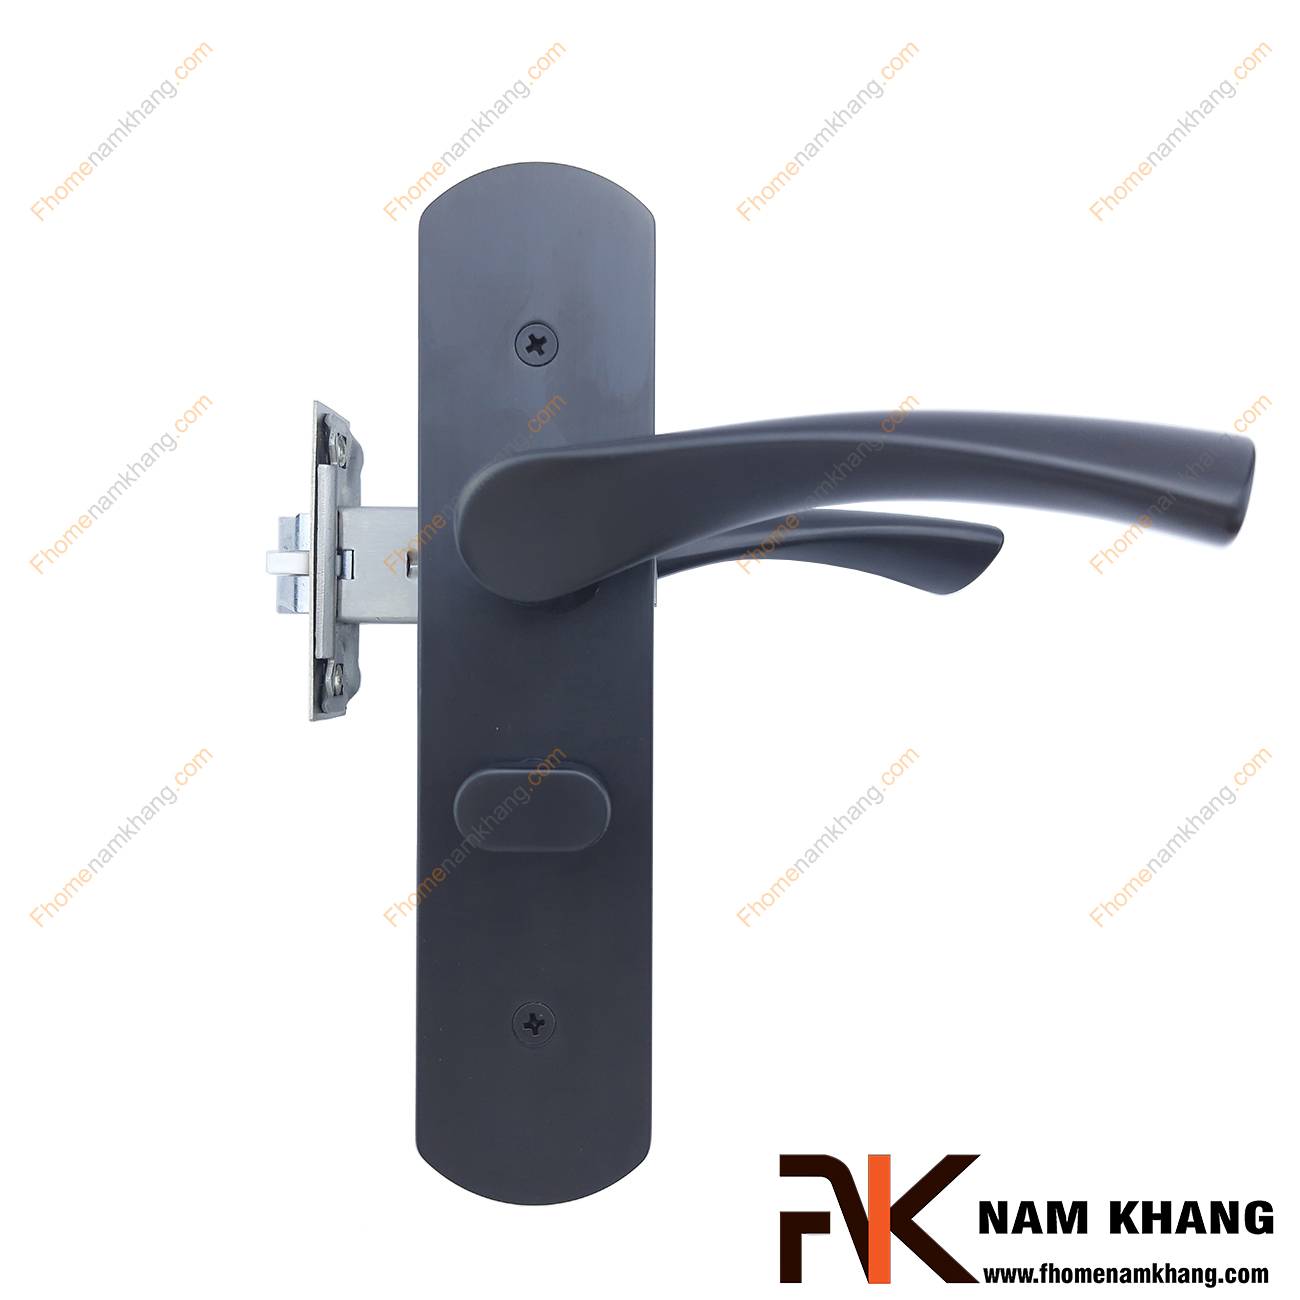 Khóa cửa phòng bằng hợp kim cao cấp màu đen mờ NK183M-ORB là một sản phẩm khóa cửa cao cấp đến từ thương hiệu ARCHIE với sự đảm bảo trong từng chi tiết sản phẩm.